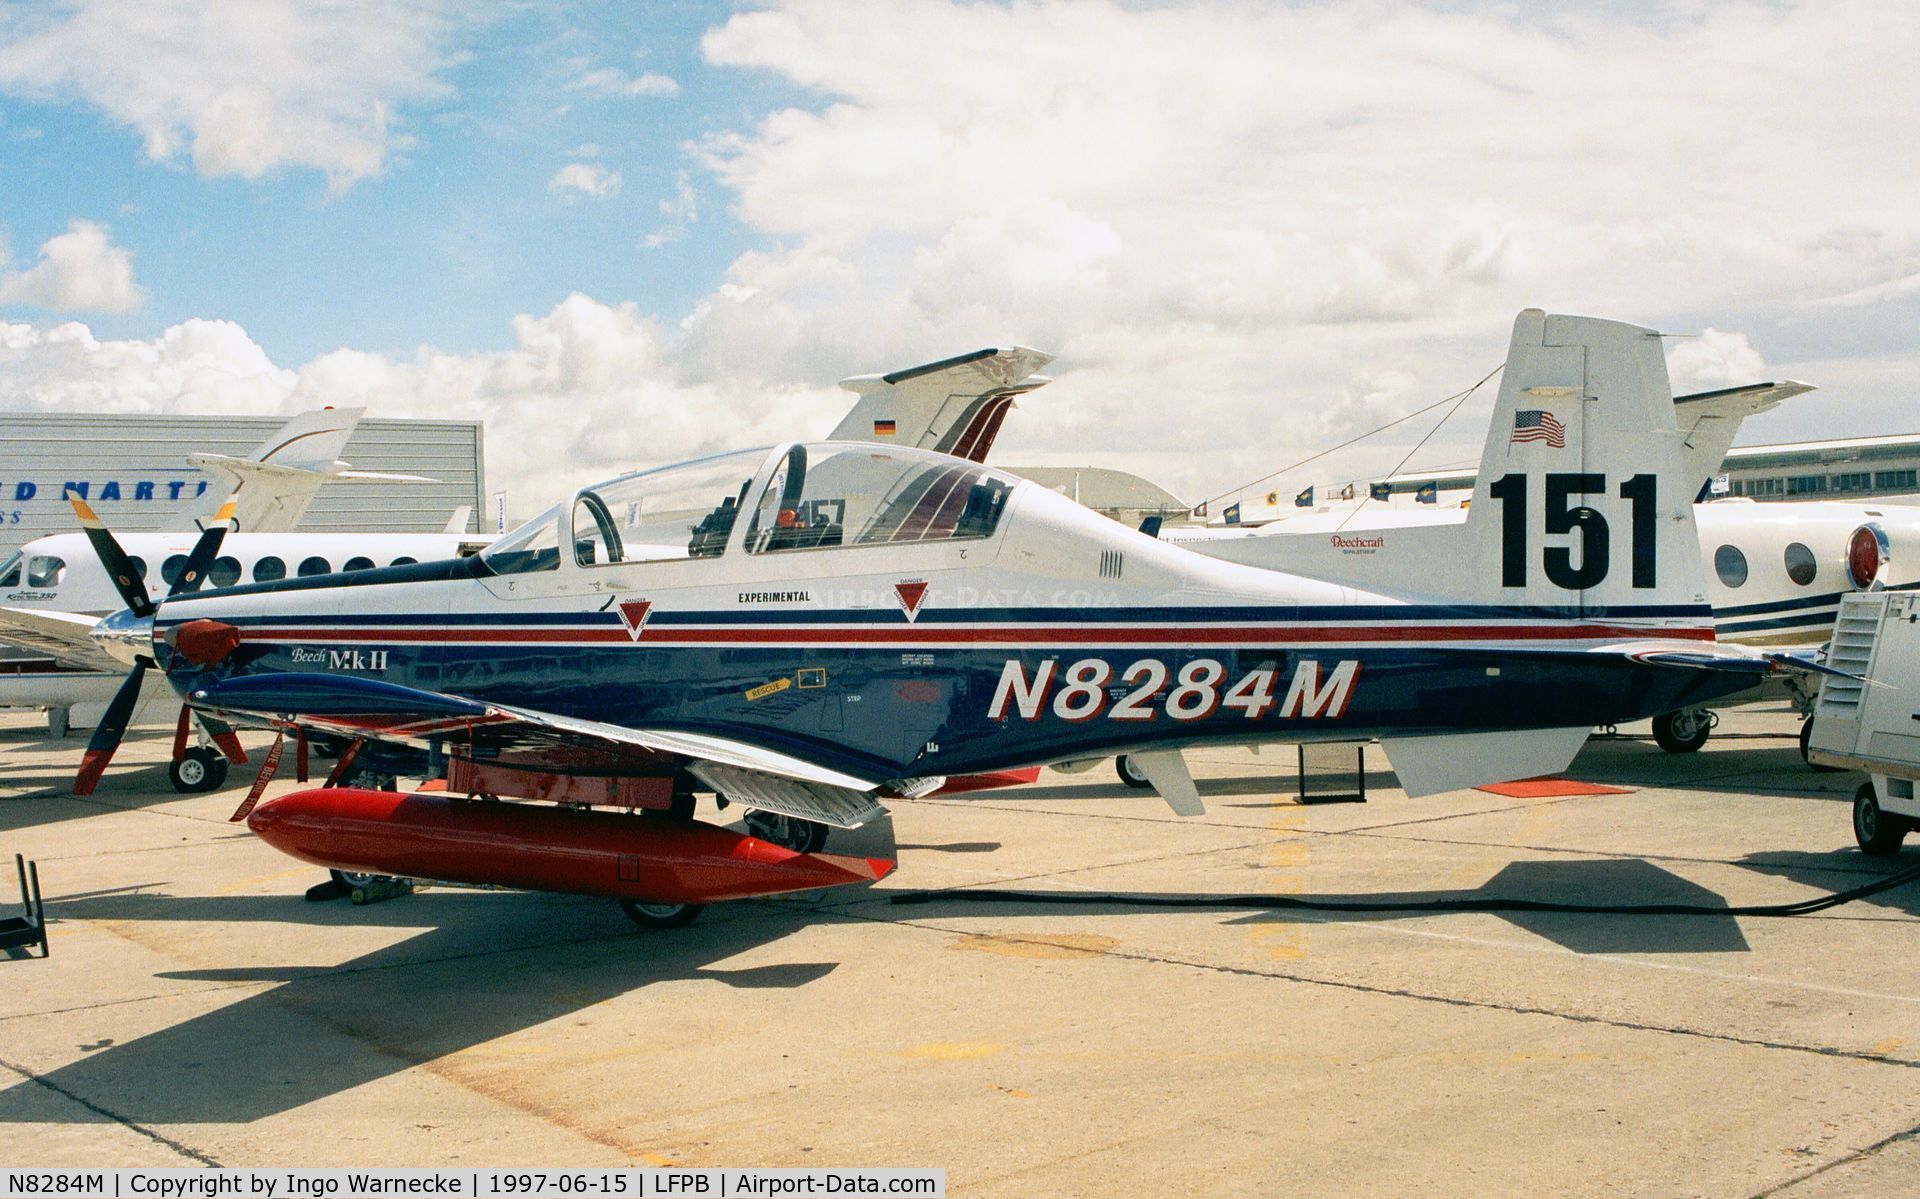 N8284M, 1992 Beech PD 373 C/N PT-2, Beechcraft PD 373 T-6 Texan II at the Aerosalon Paris 1997